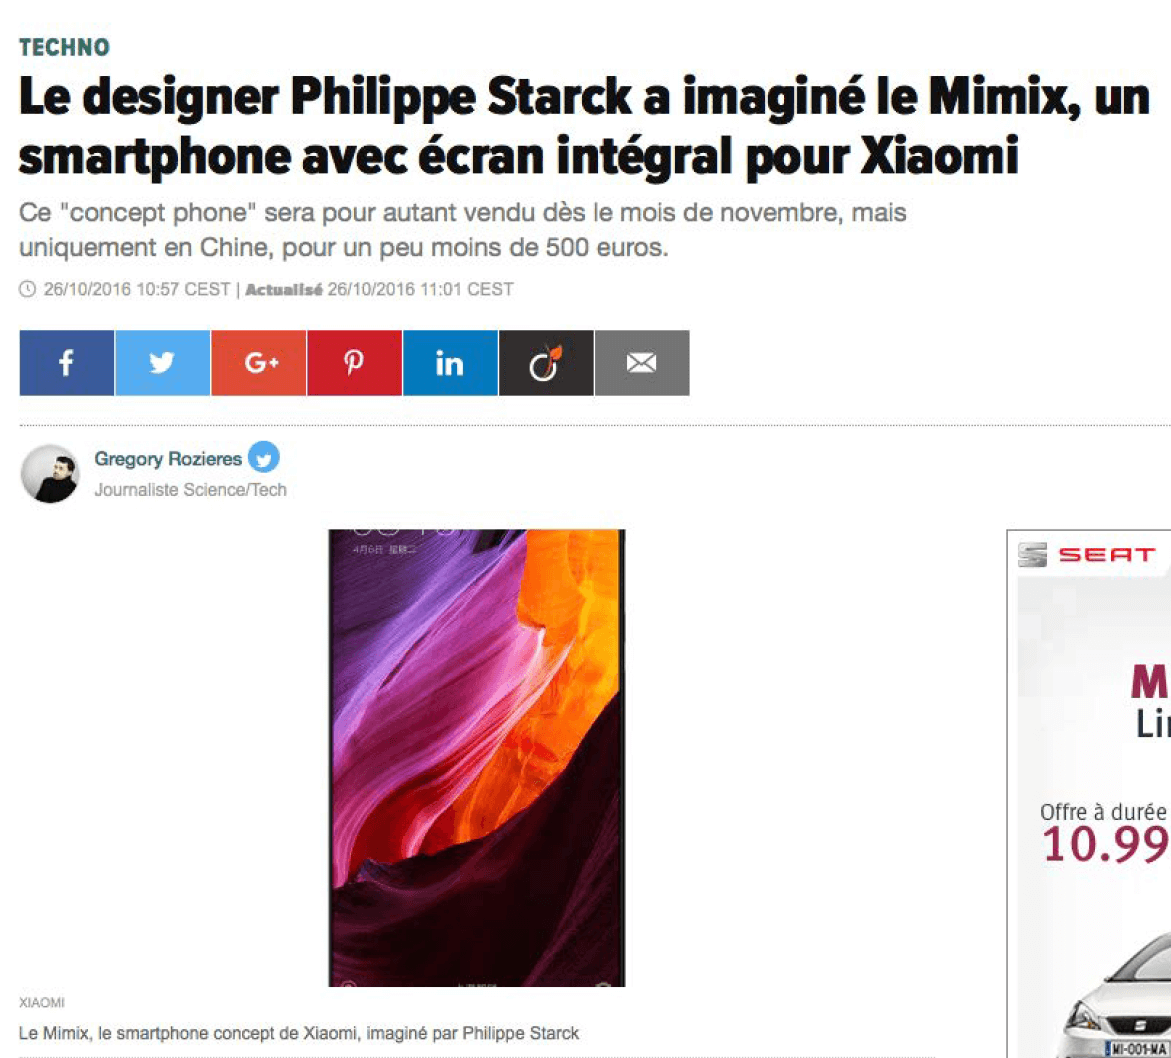 Le designer Philippe Starck a imaginé le Mi Mix, un smartphone avec écran intégral pour Xiaomi